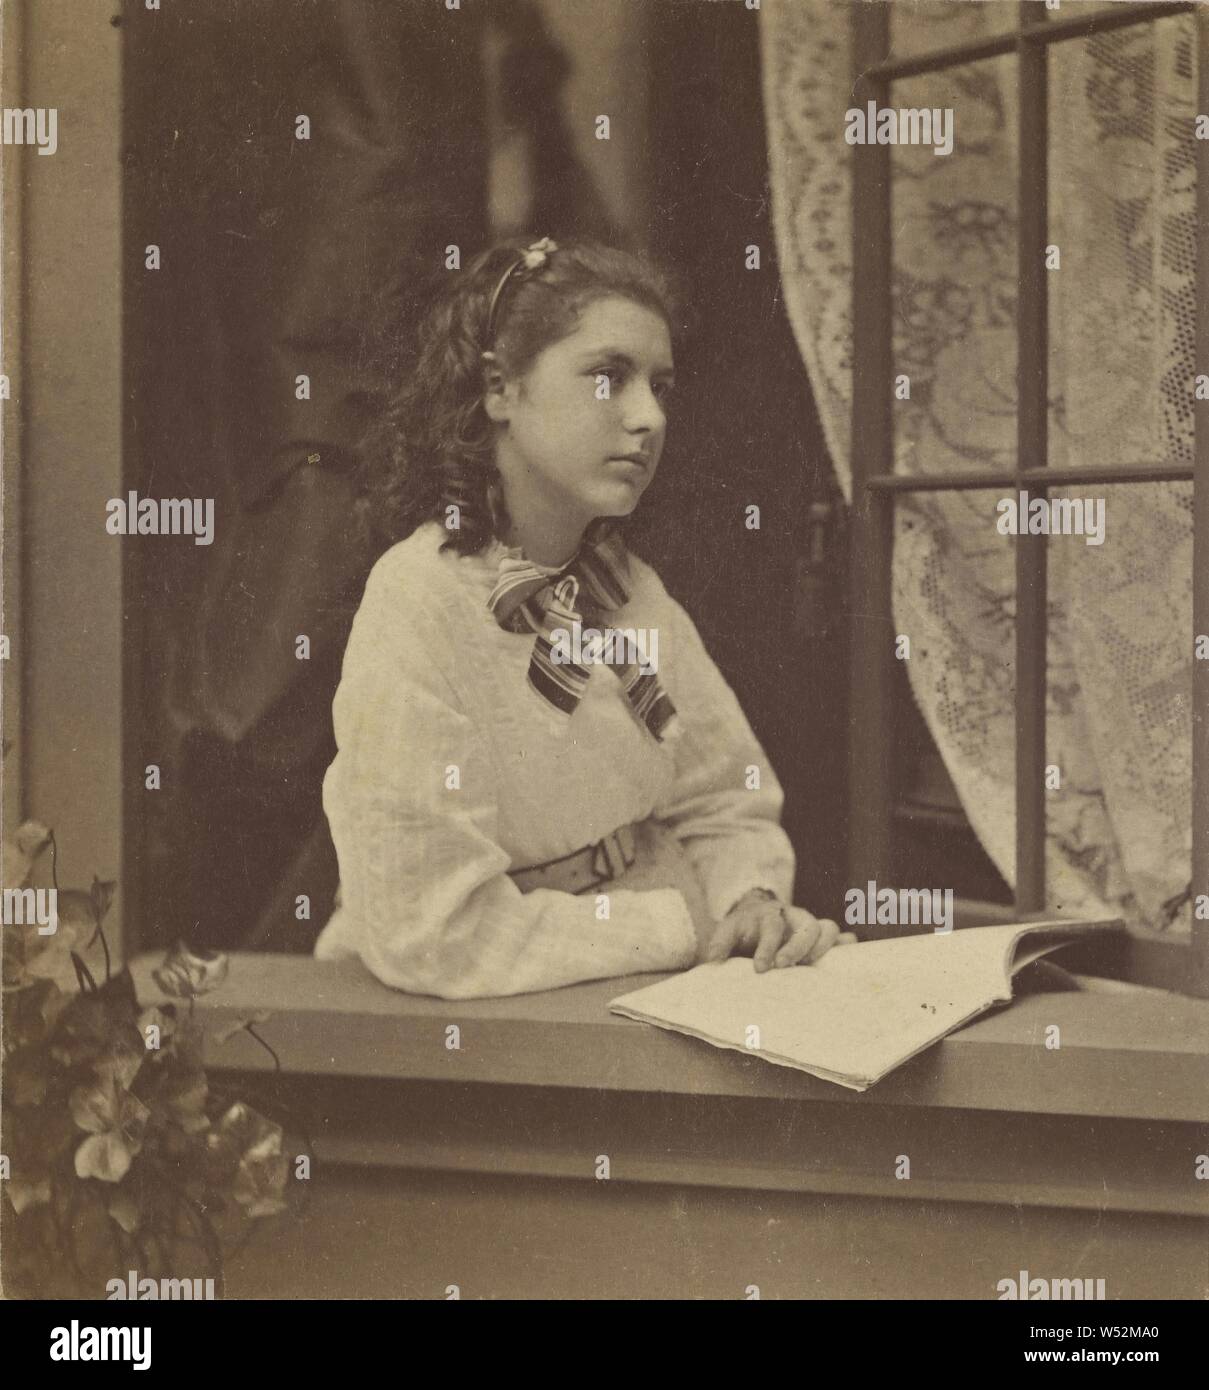 Junge Frau stellte auf einer Fensterbank, offenes Buch auf der Fensterbank, Dexter B. Vickery (Amerikanisch, aktive Haverhill, Massachusetts 1860s - 1900s), ca. 1865, Eiweiß silber Drucken Stockfoto